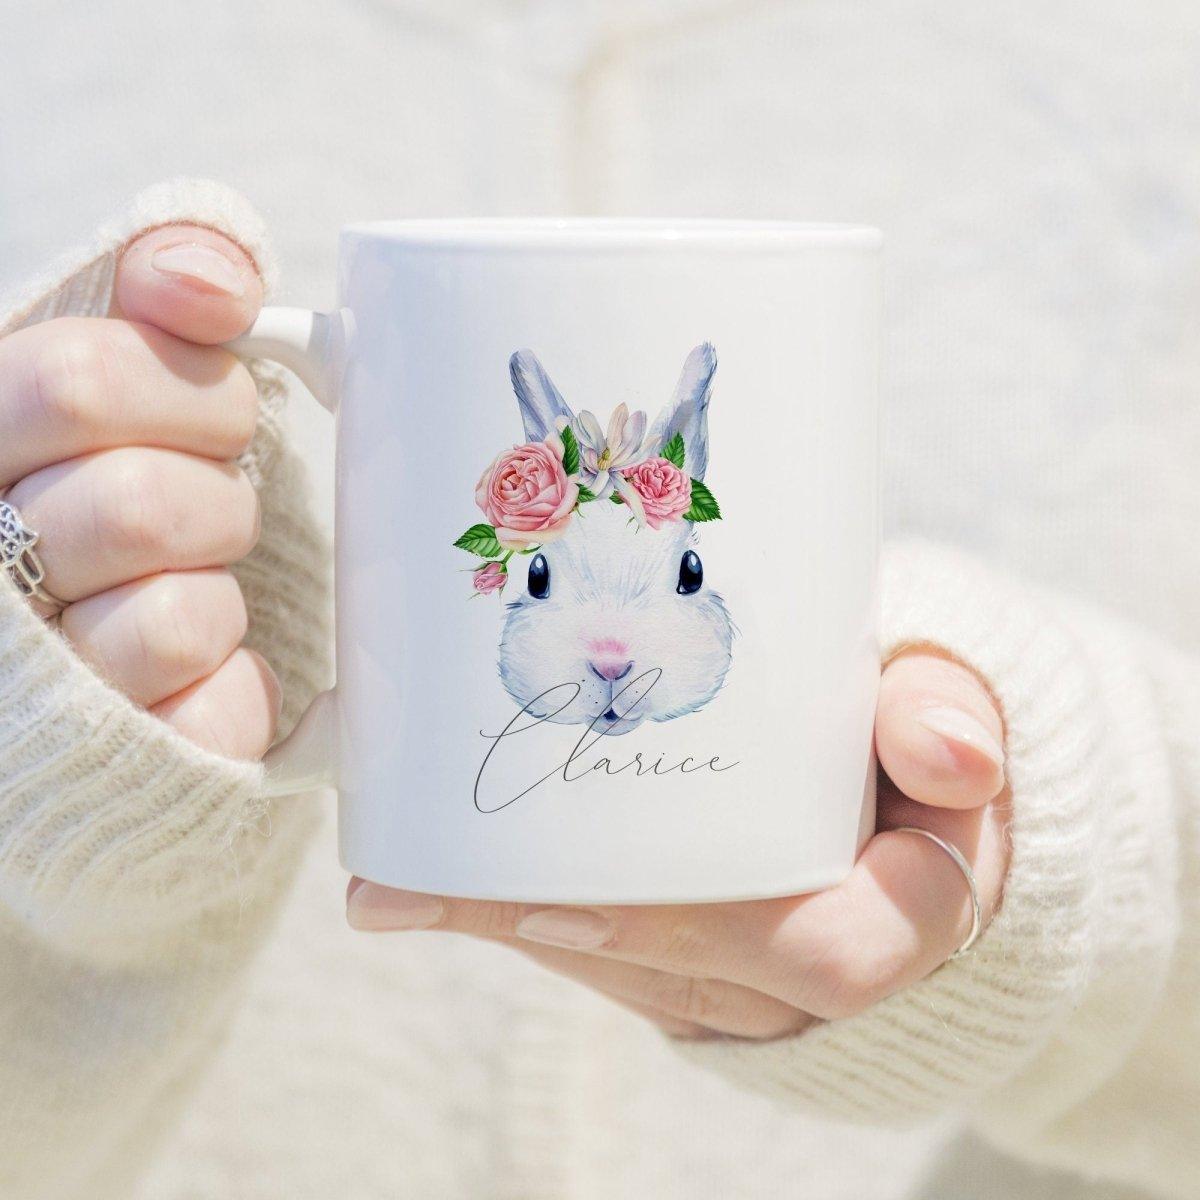 Personalised Easter Bunny Mug, Easter Mug Gift, Personalised Bunny Mug, Easter Gift for Her, Bunny Mug, Easter Mug, Spring Mug, Easter Decor - Amy Lucy